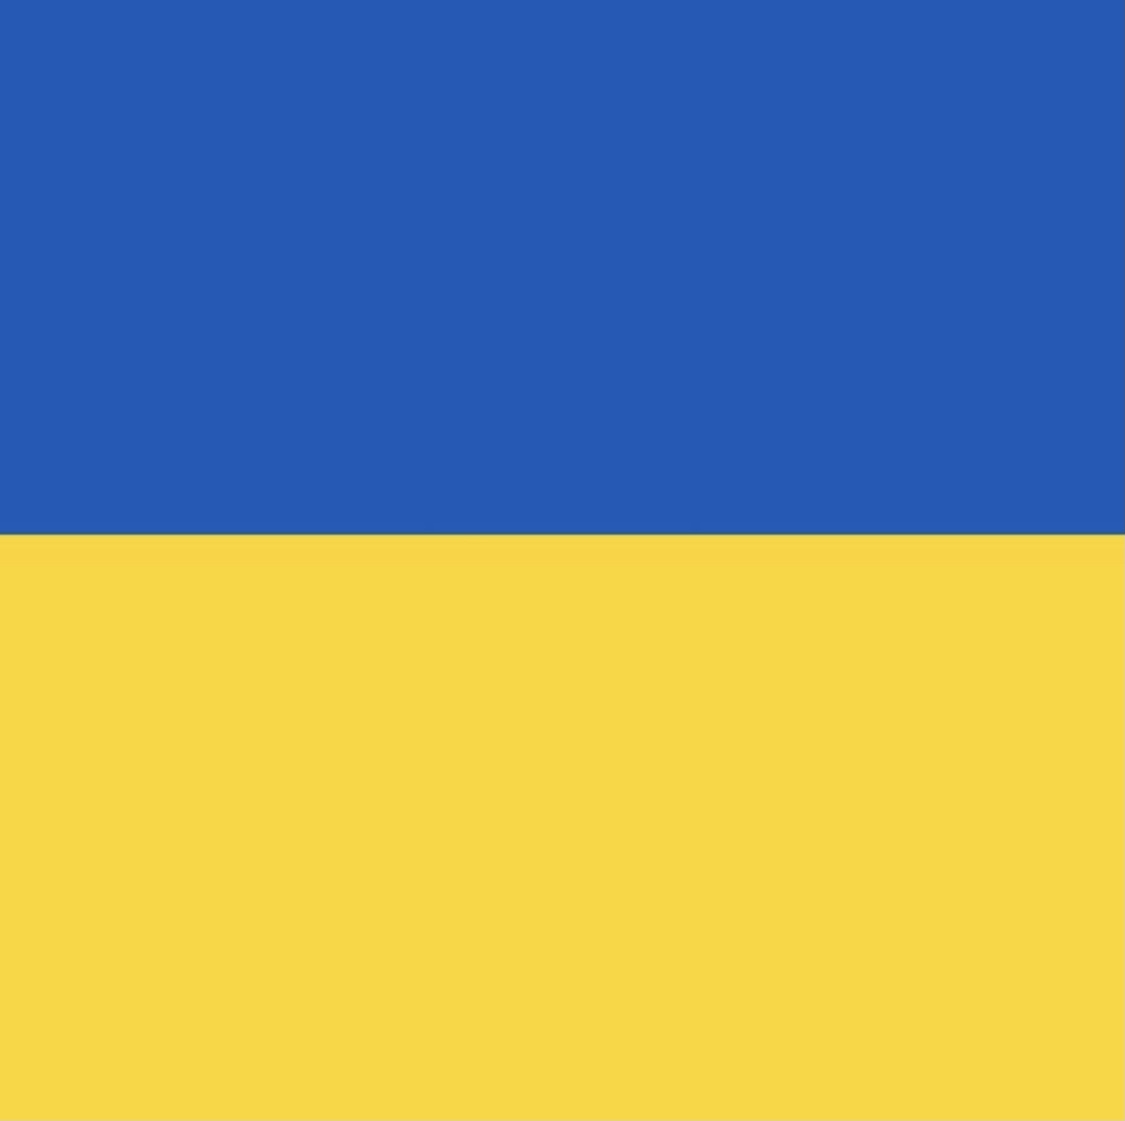 Sláva Ukrajině!